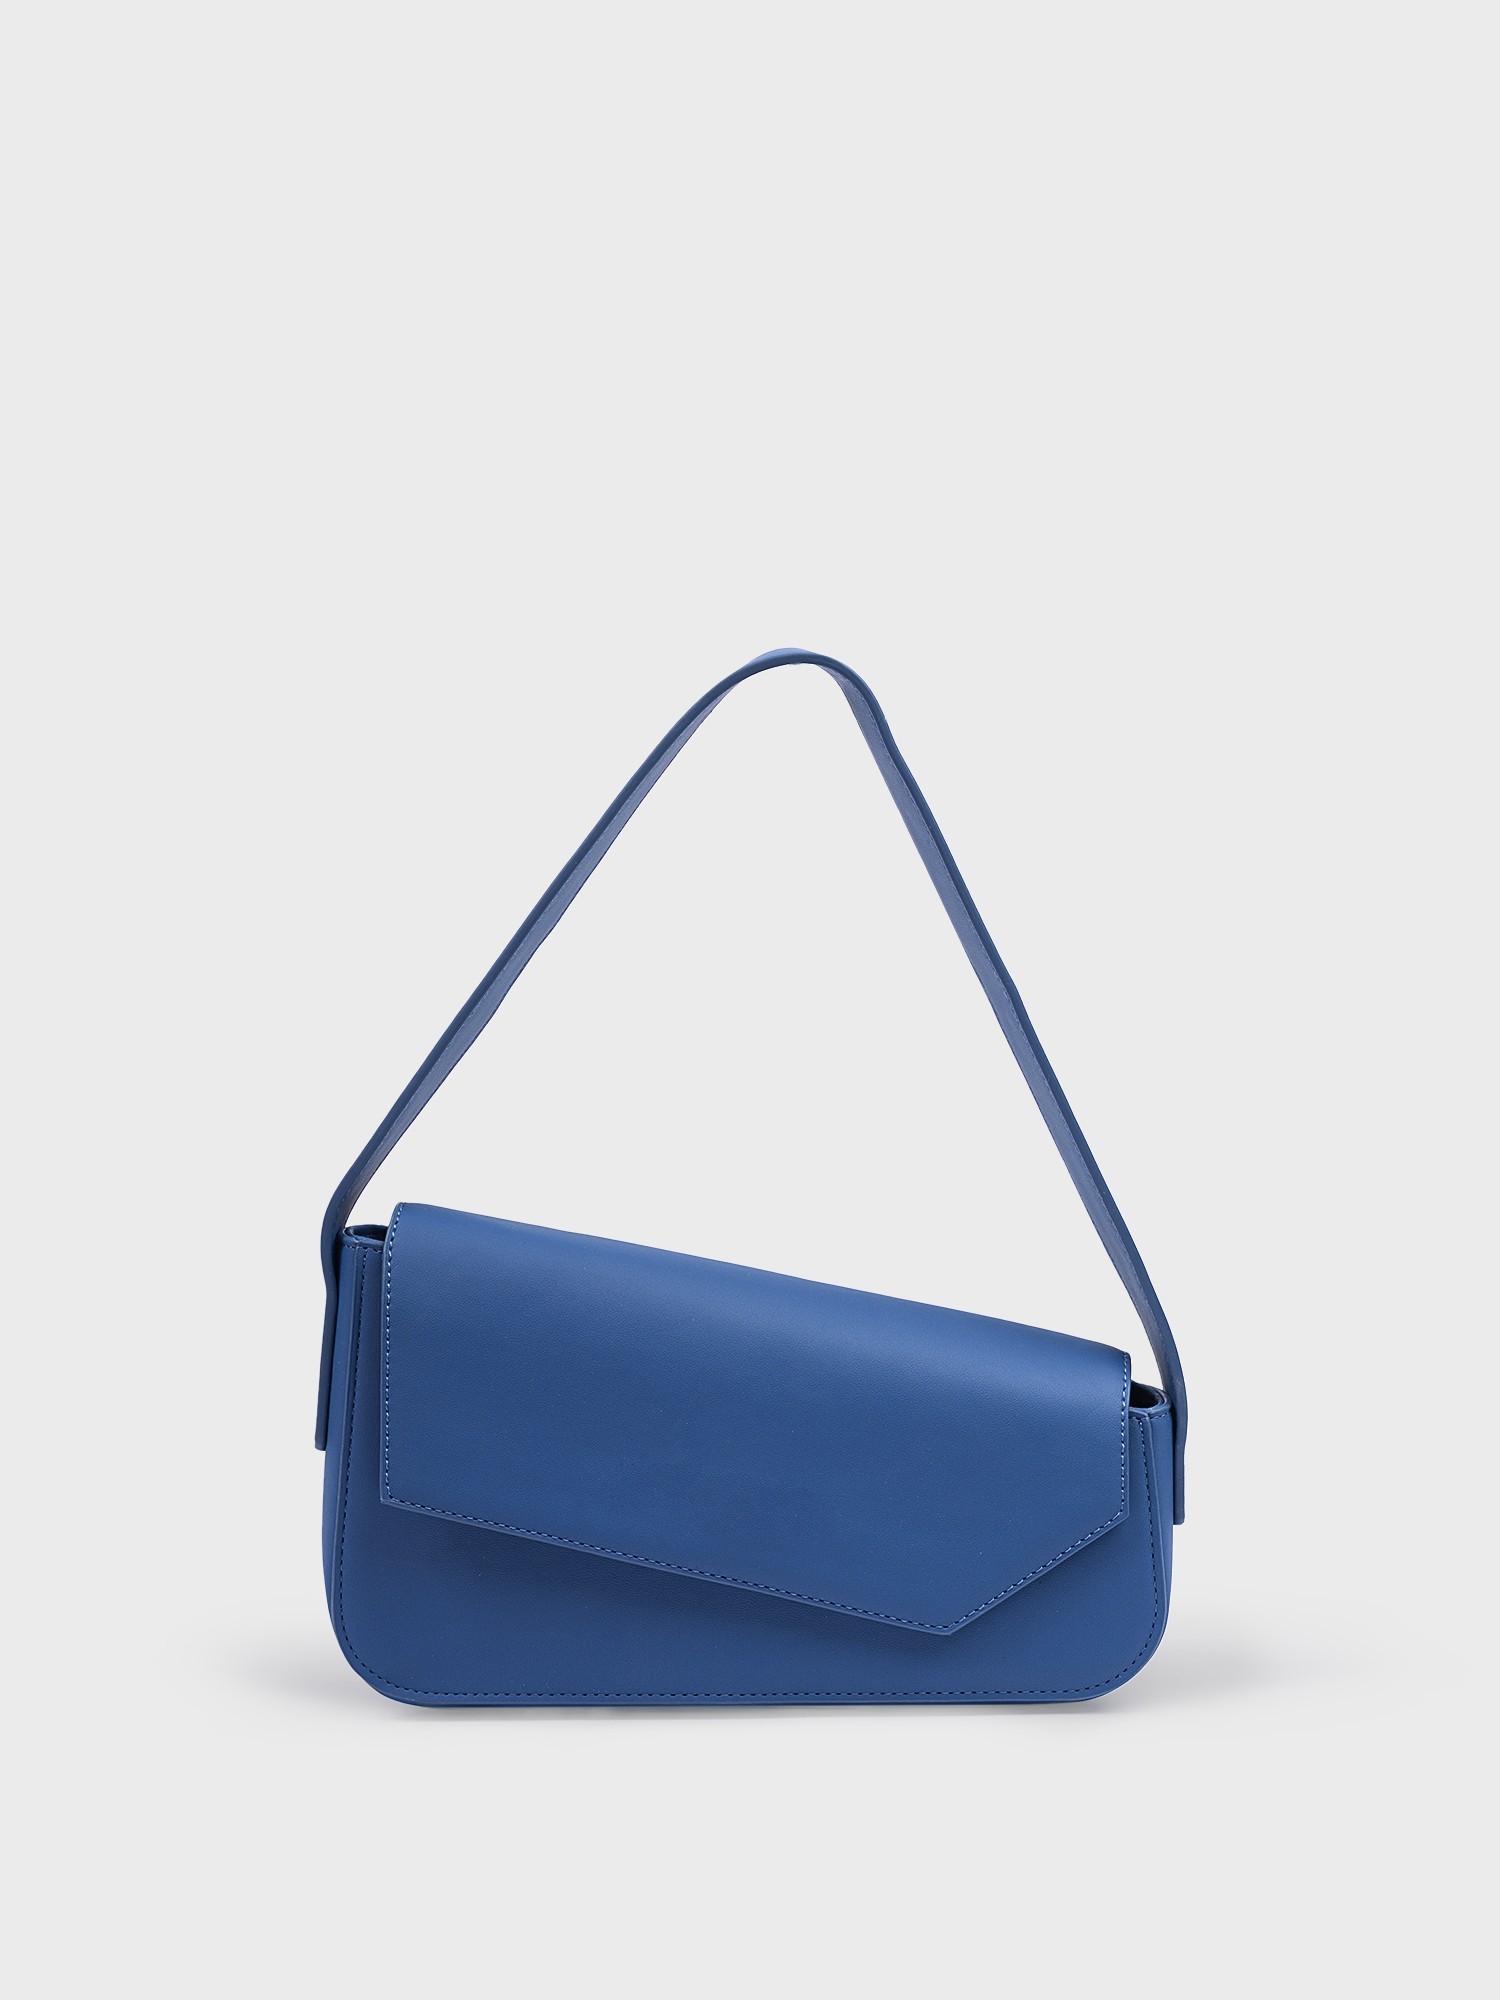 Асимметричная сумка синяя (26*6*14.5)